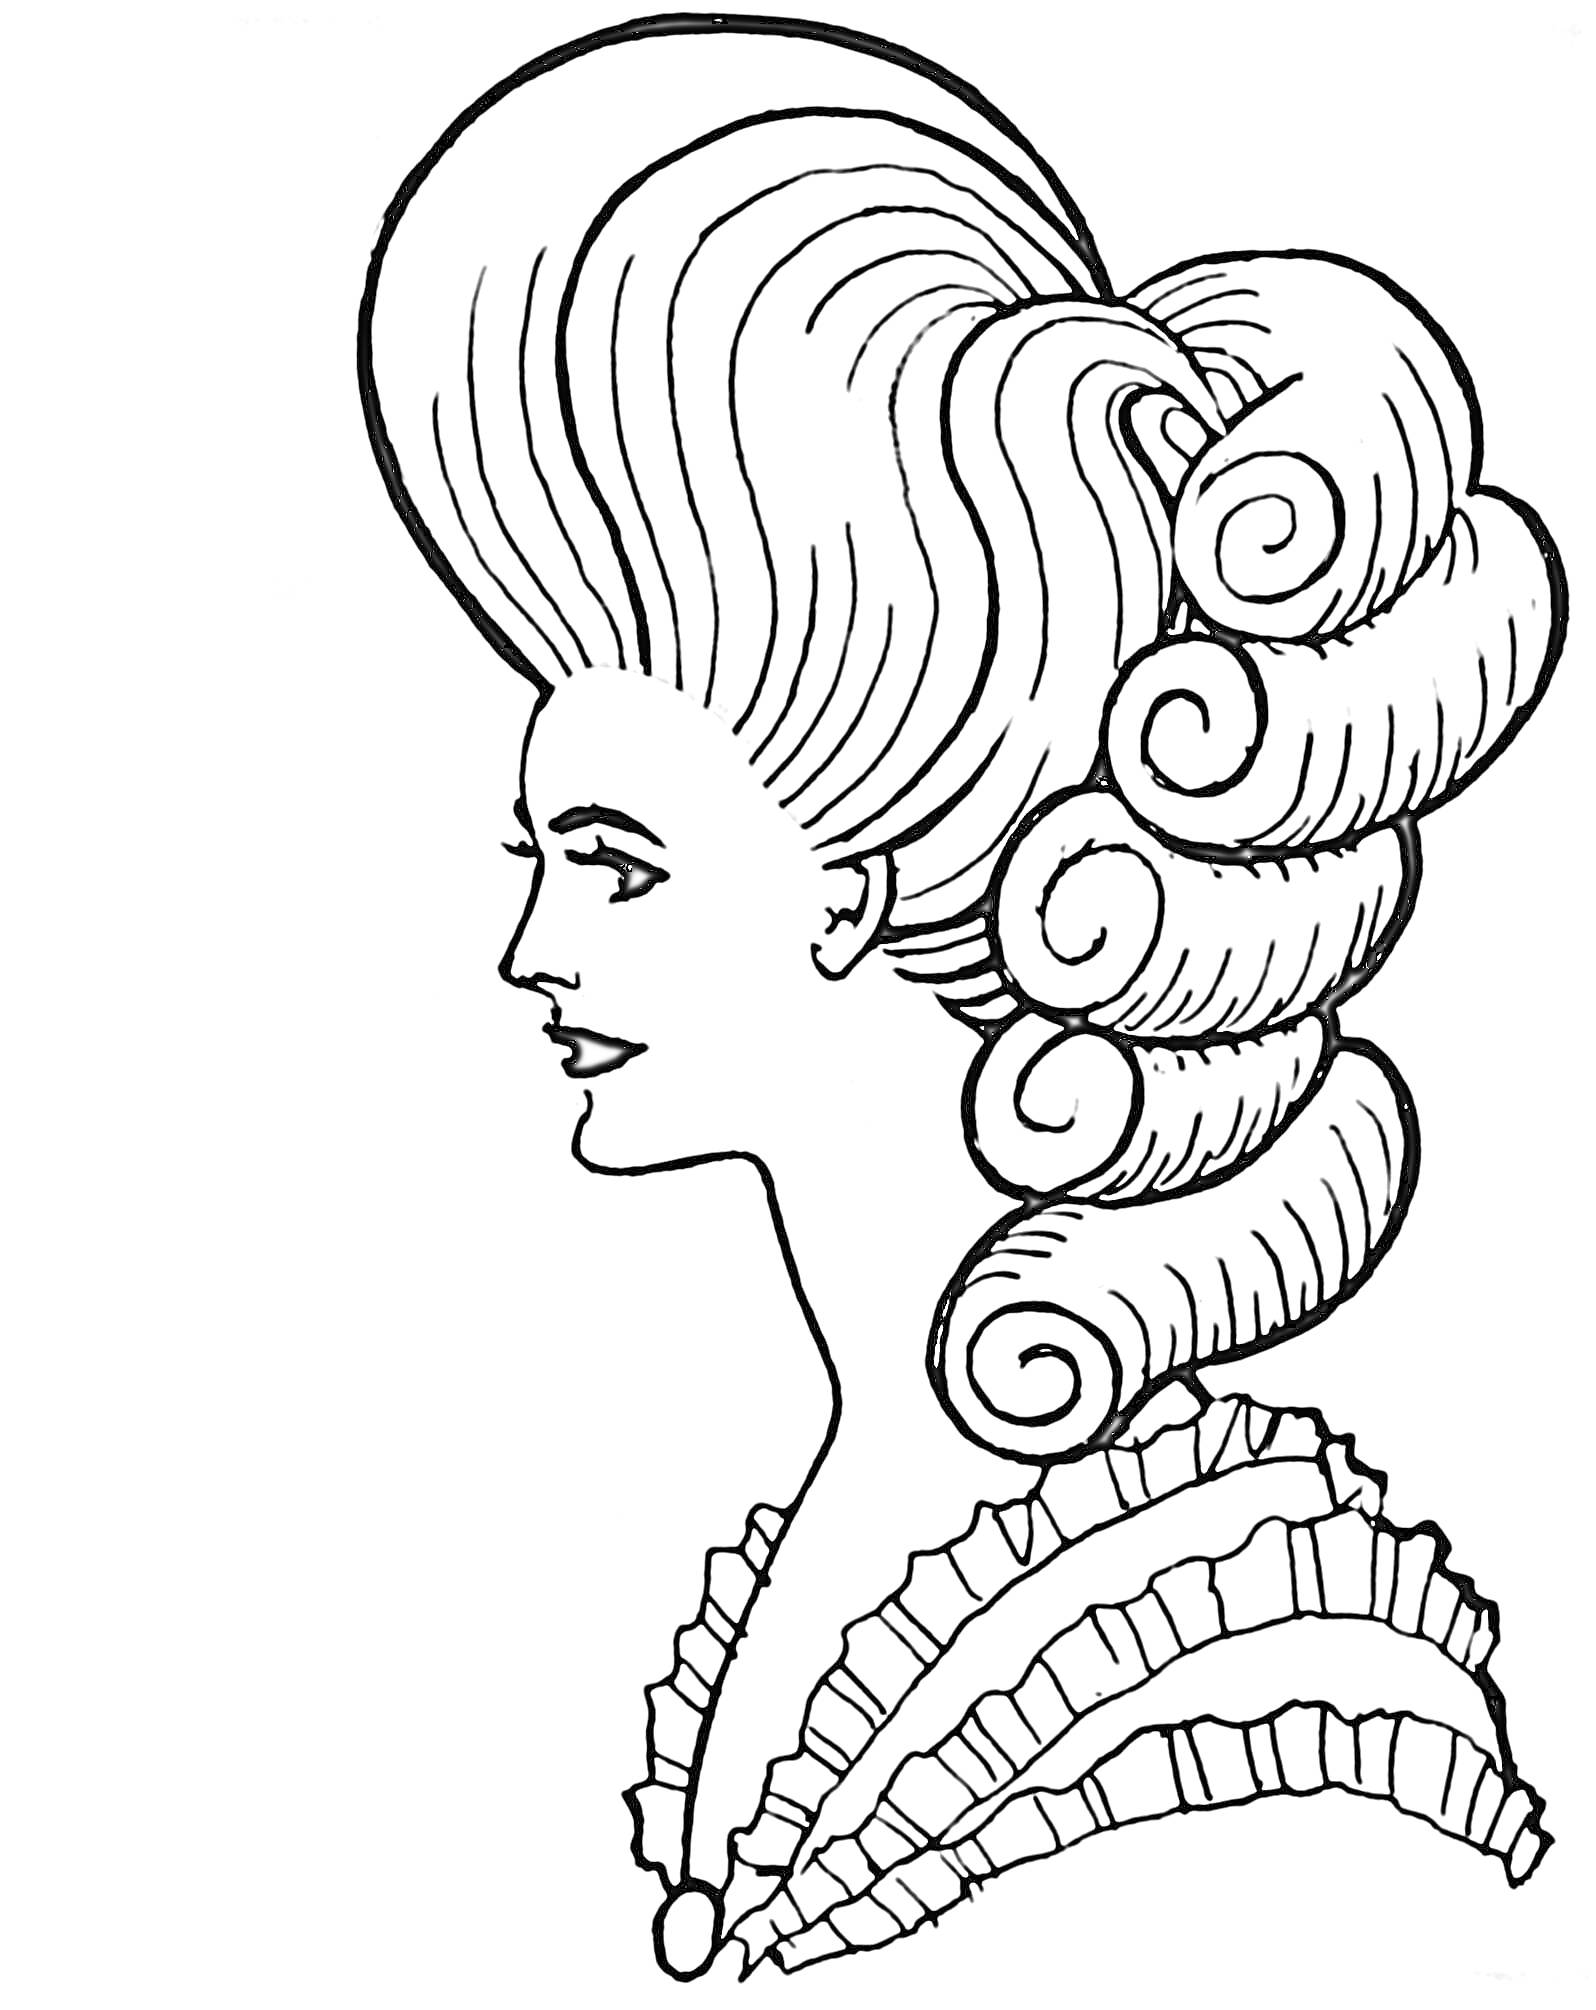 Женский профиль с высокой прической, волнистые локоны, платье с оборками